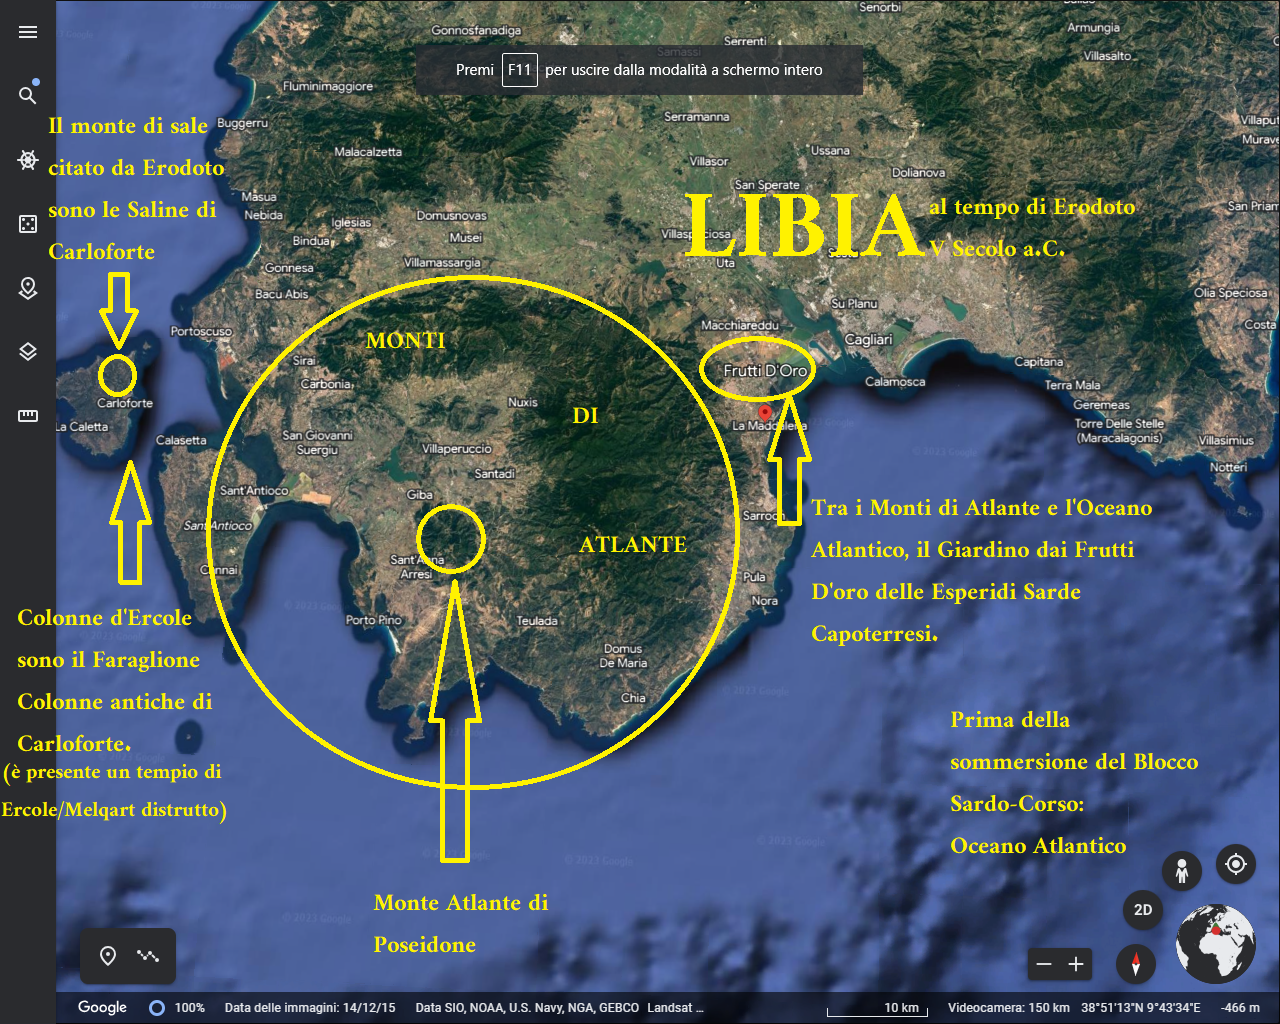 Orain arte Herodotearen Libiako kartografia okerra izan da: Libia Cagliari probintzia da